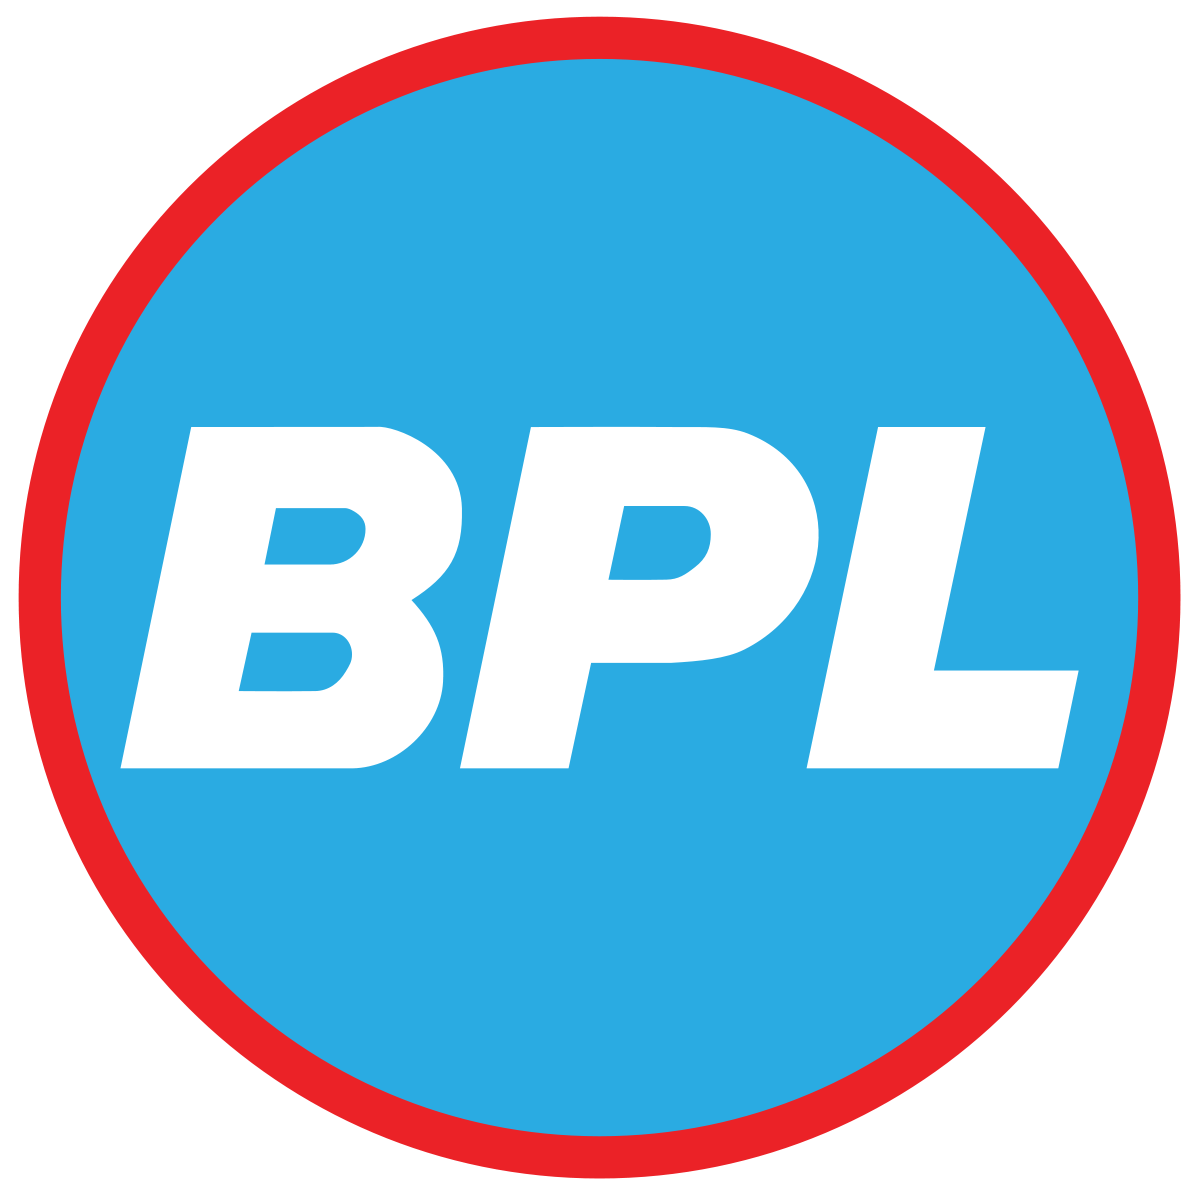 TV Company Logo - BPL Group